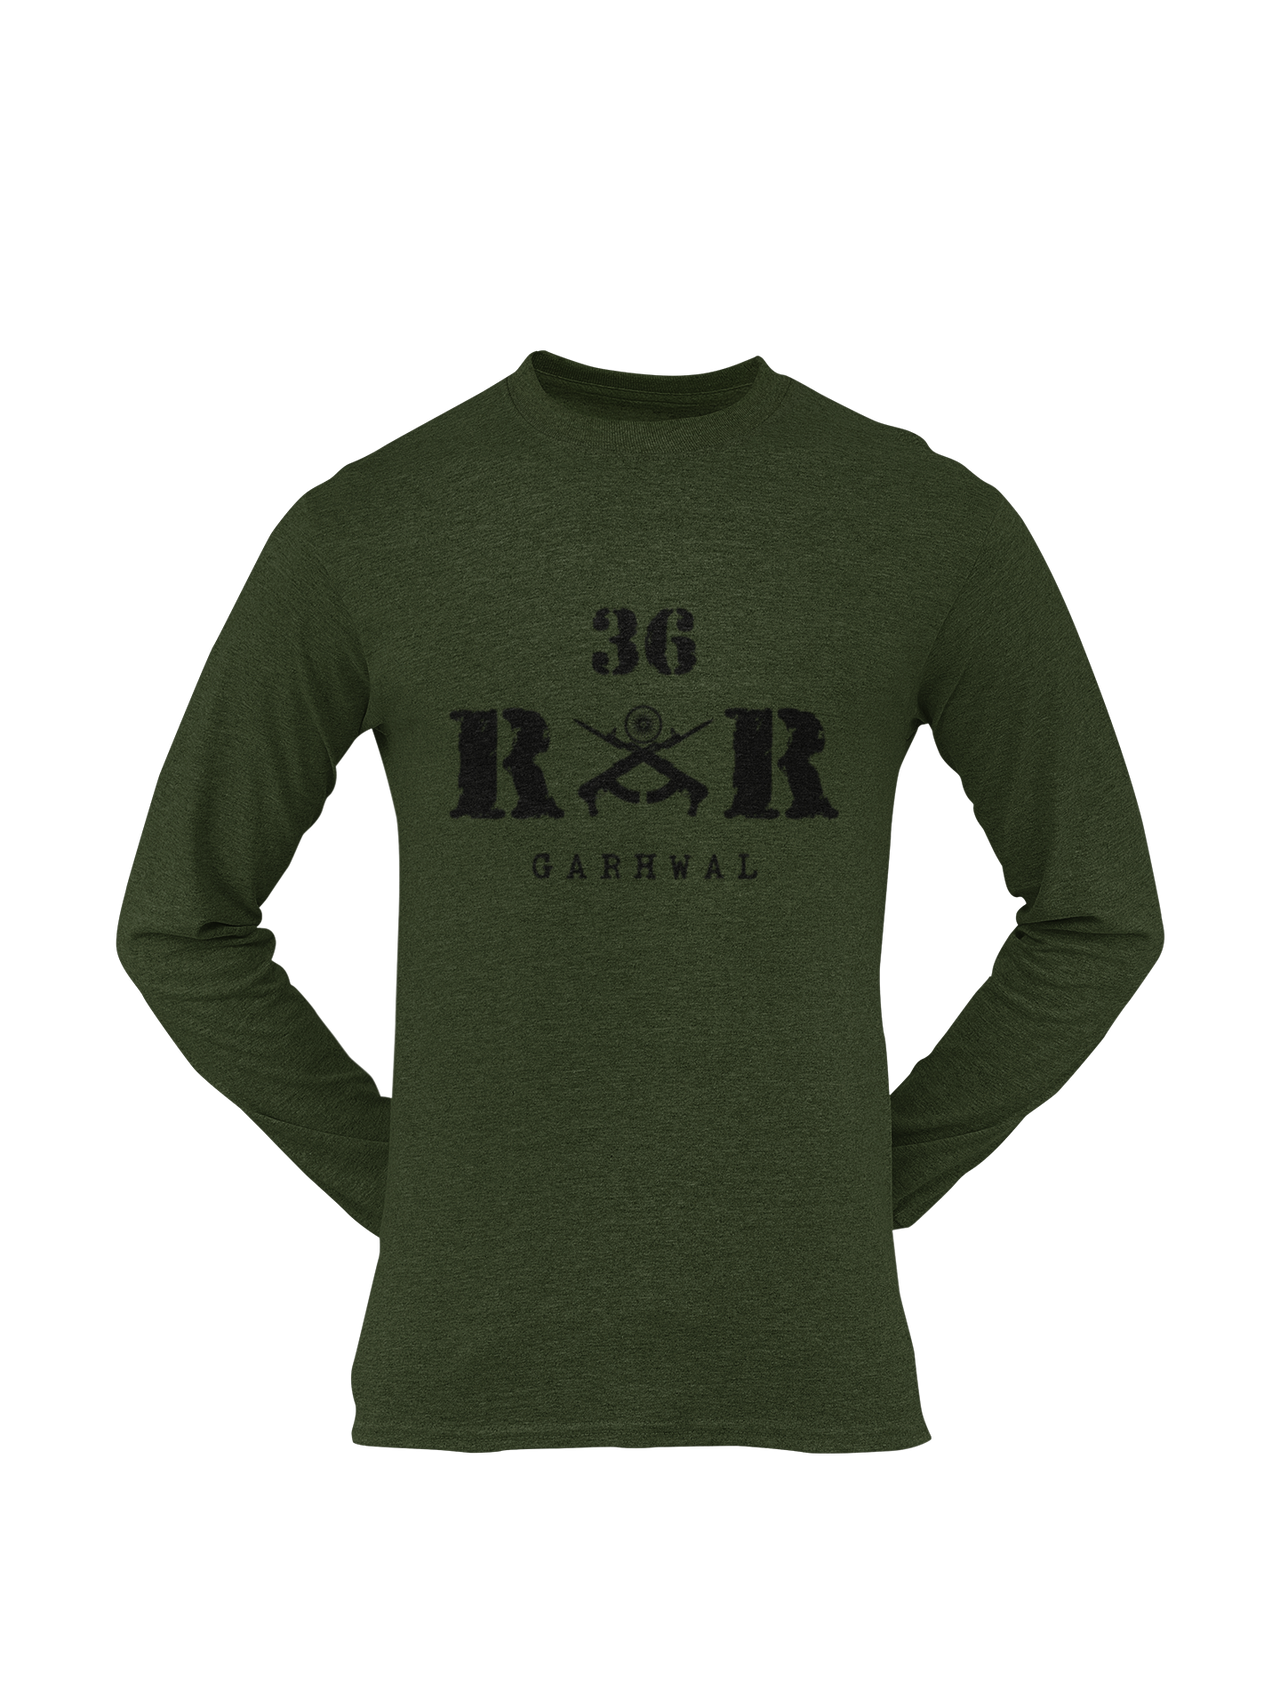 Rashtriya Rifles T-shirt - 36 RR Garhwal (Men)